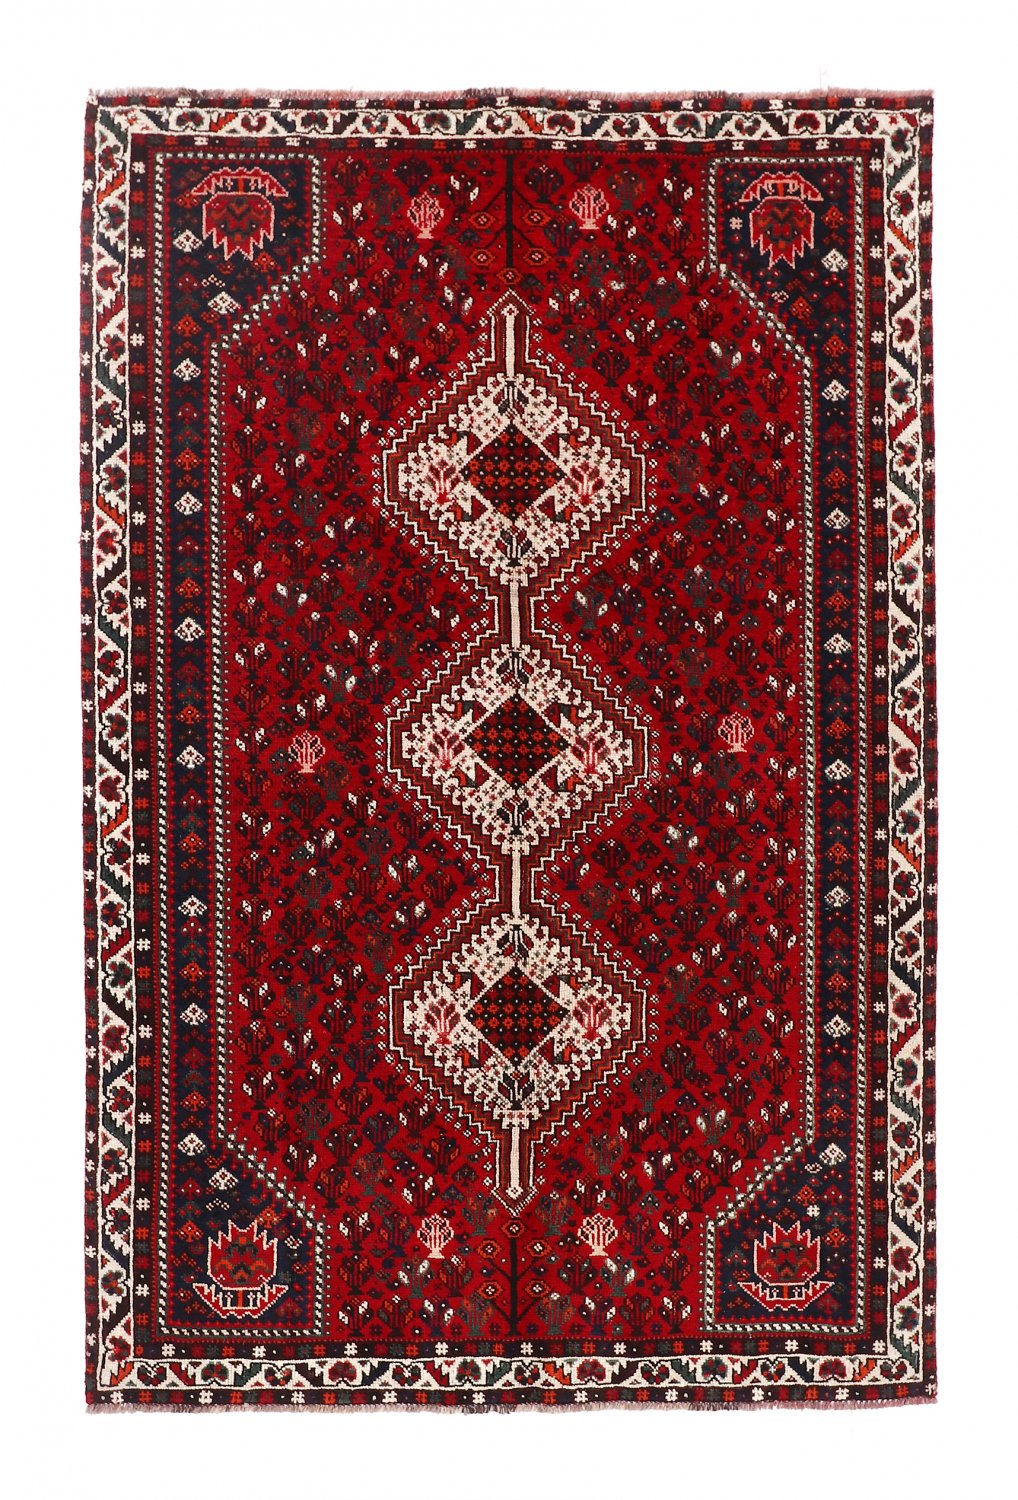 Persian rug Hamedan 248 x 160 cm